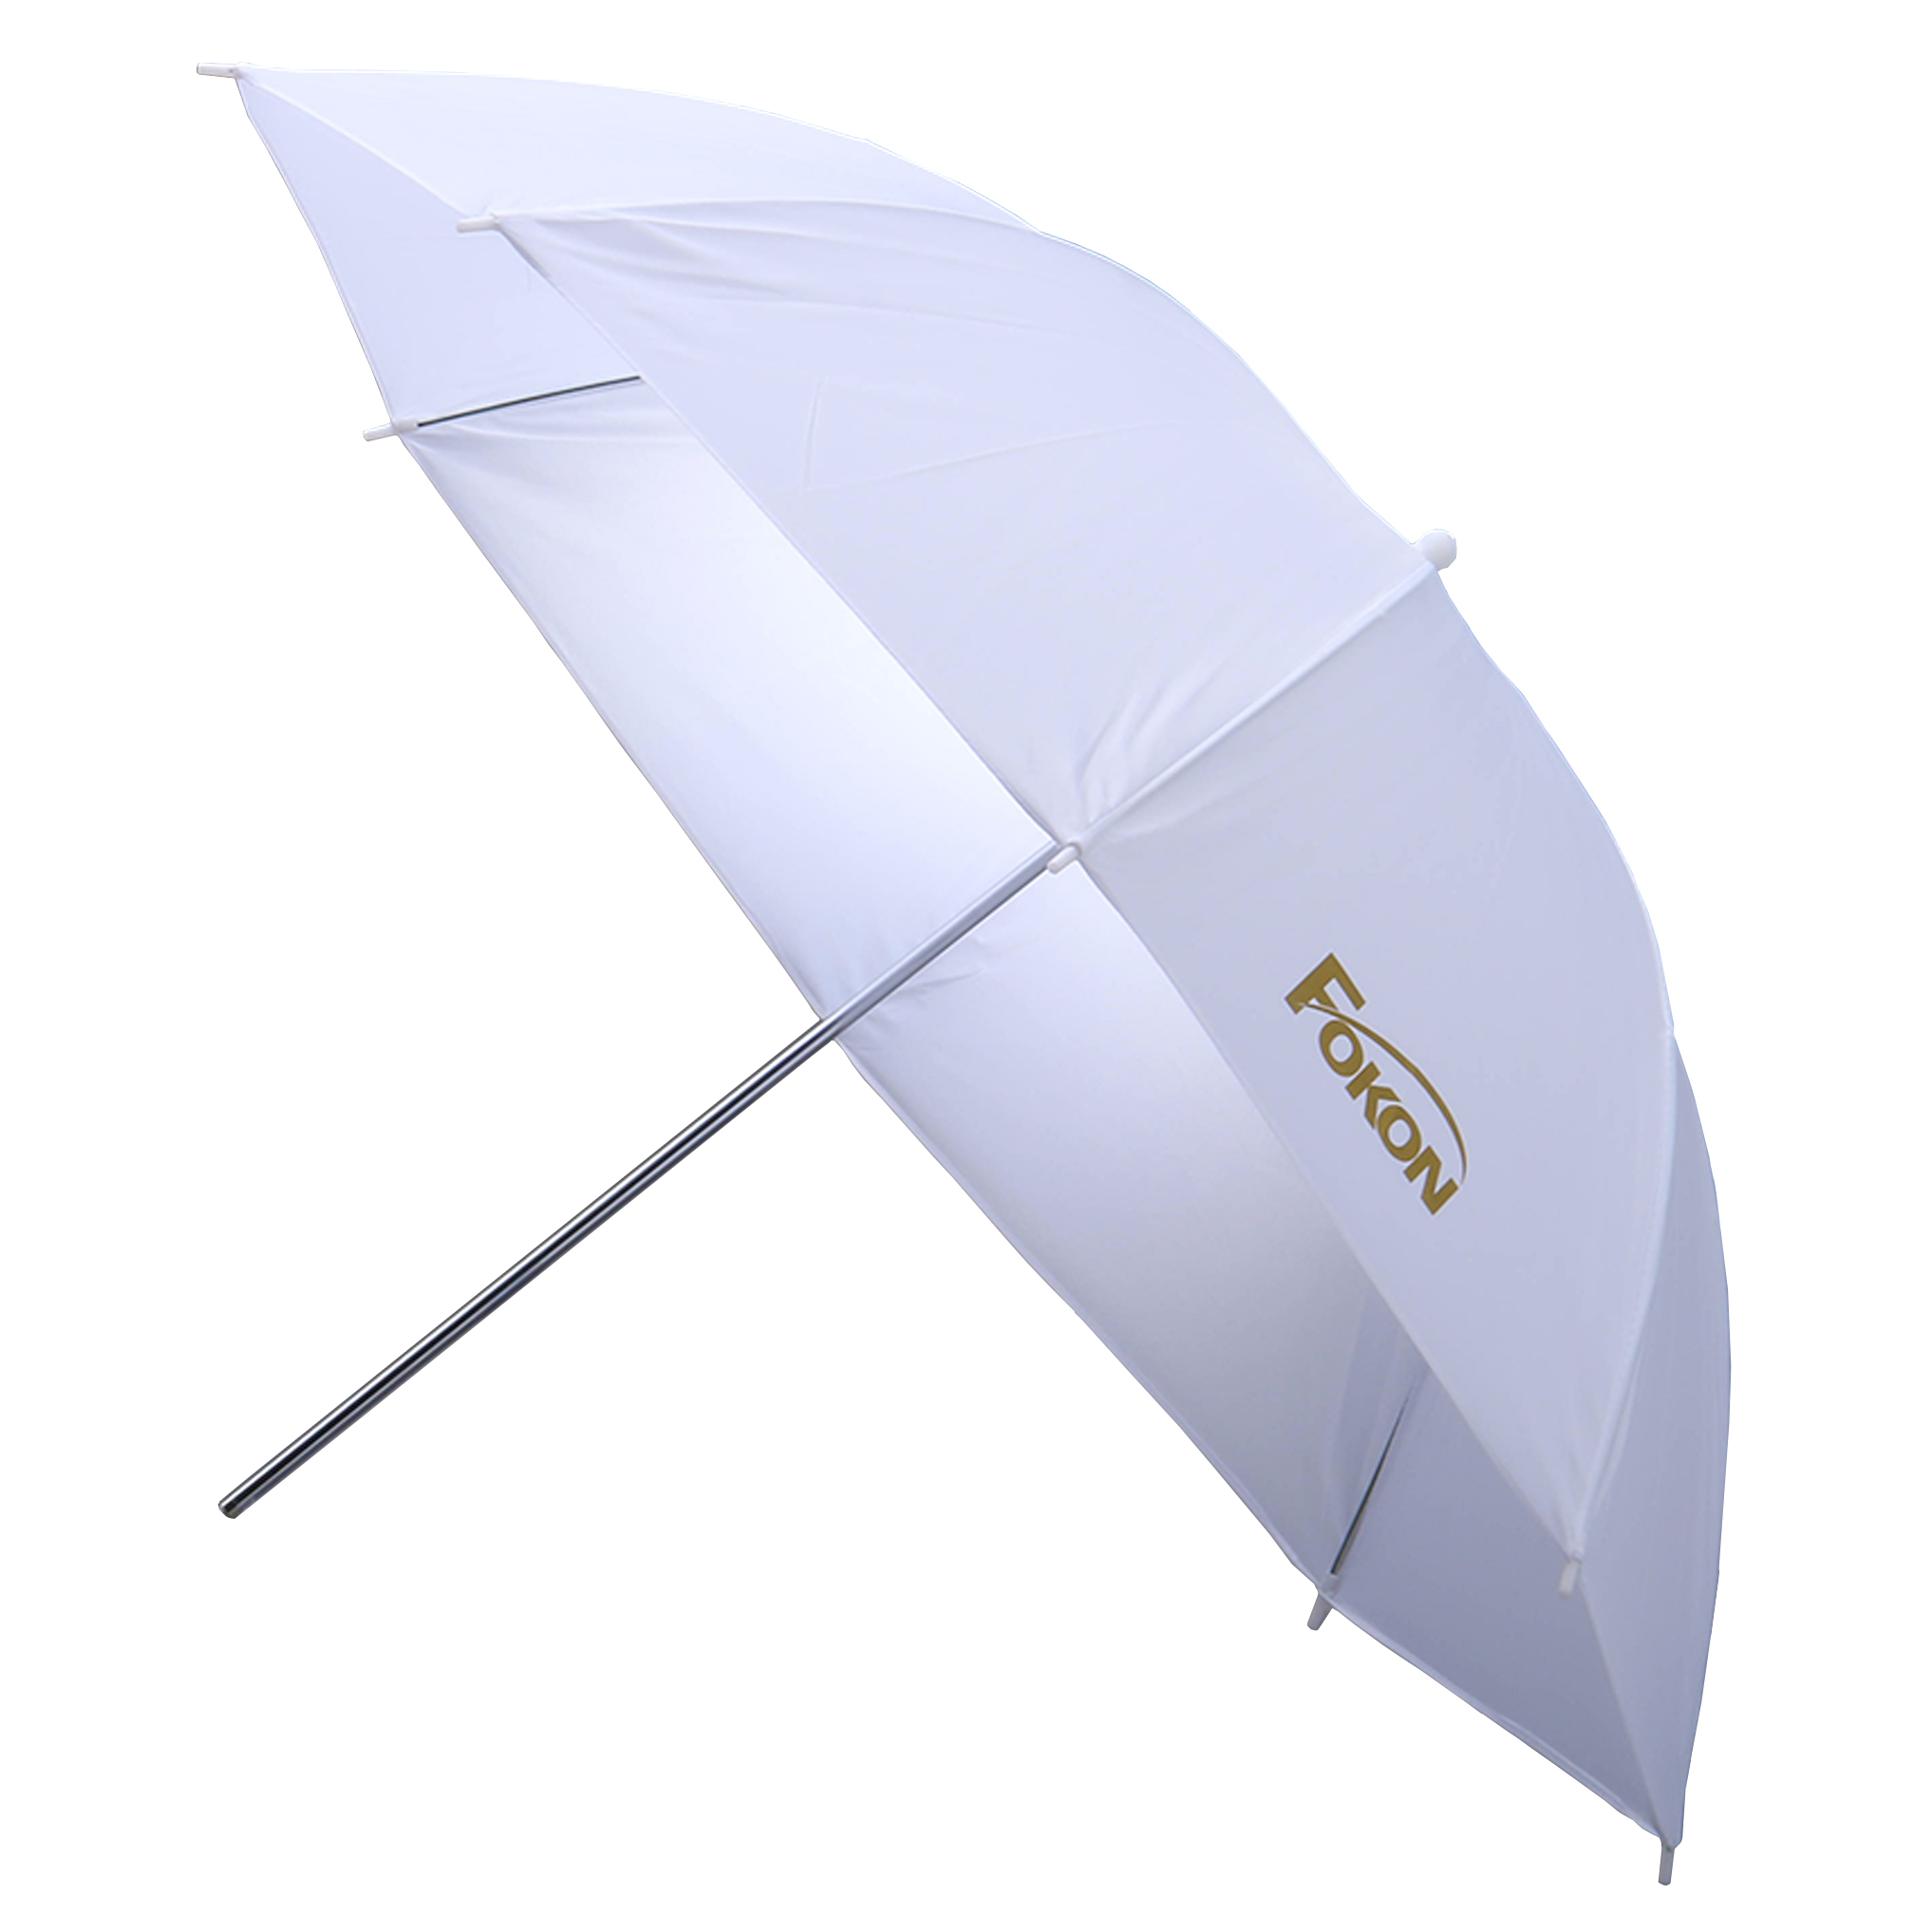 Fokon Umbrella 85 cm ร่มแสงทะลุ ขนาด 85 ซม. ใช้ร่วมกับไฟสตูดิโอ ช่วยให้แสงนุ่ม ราคา 280 บาท